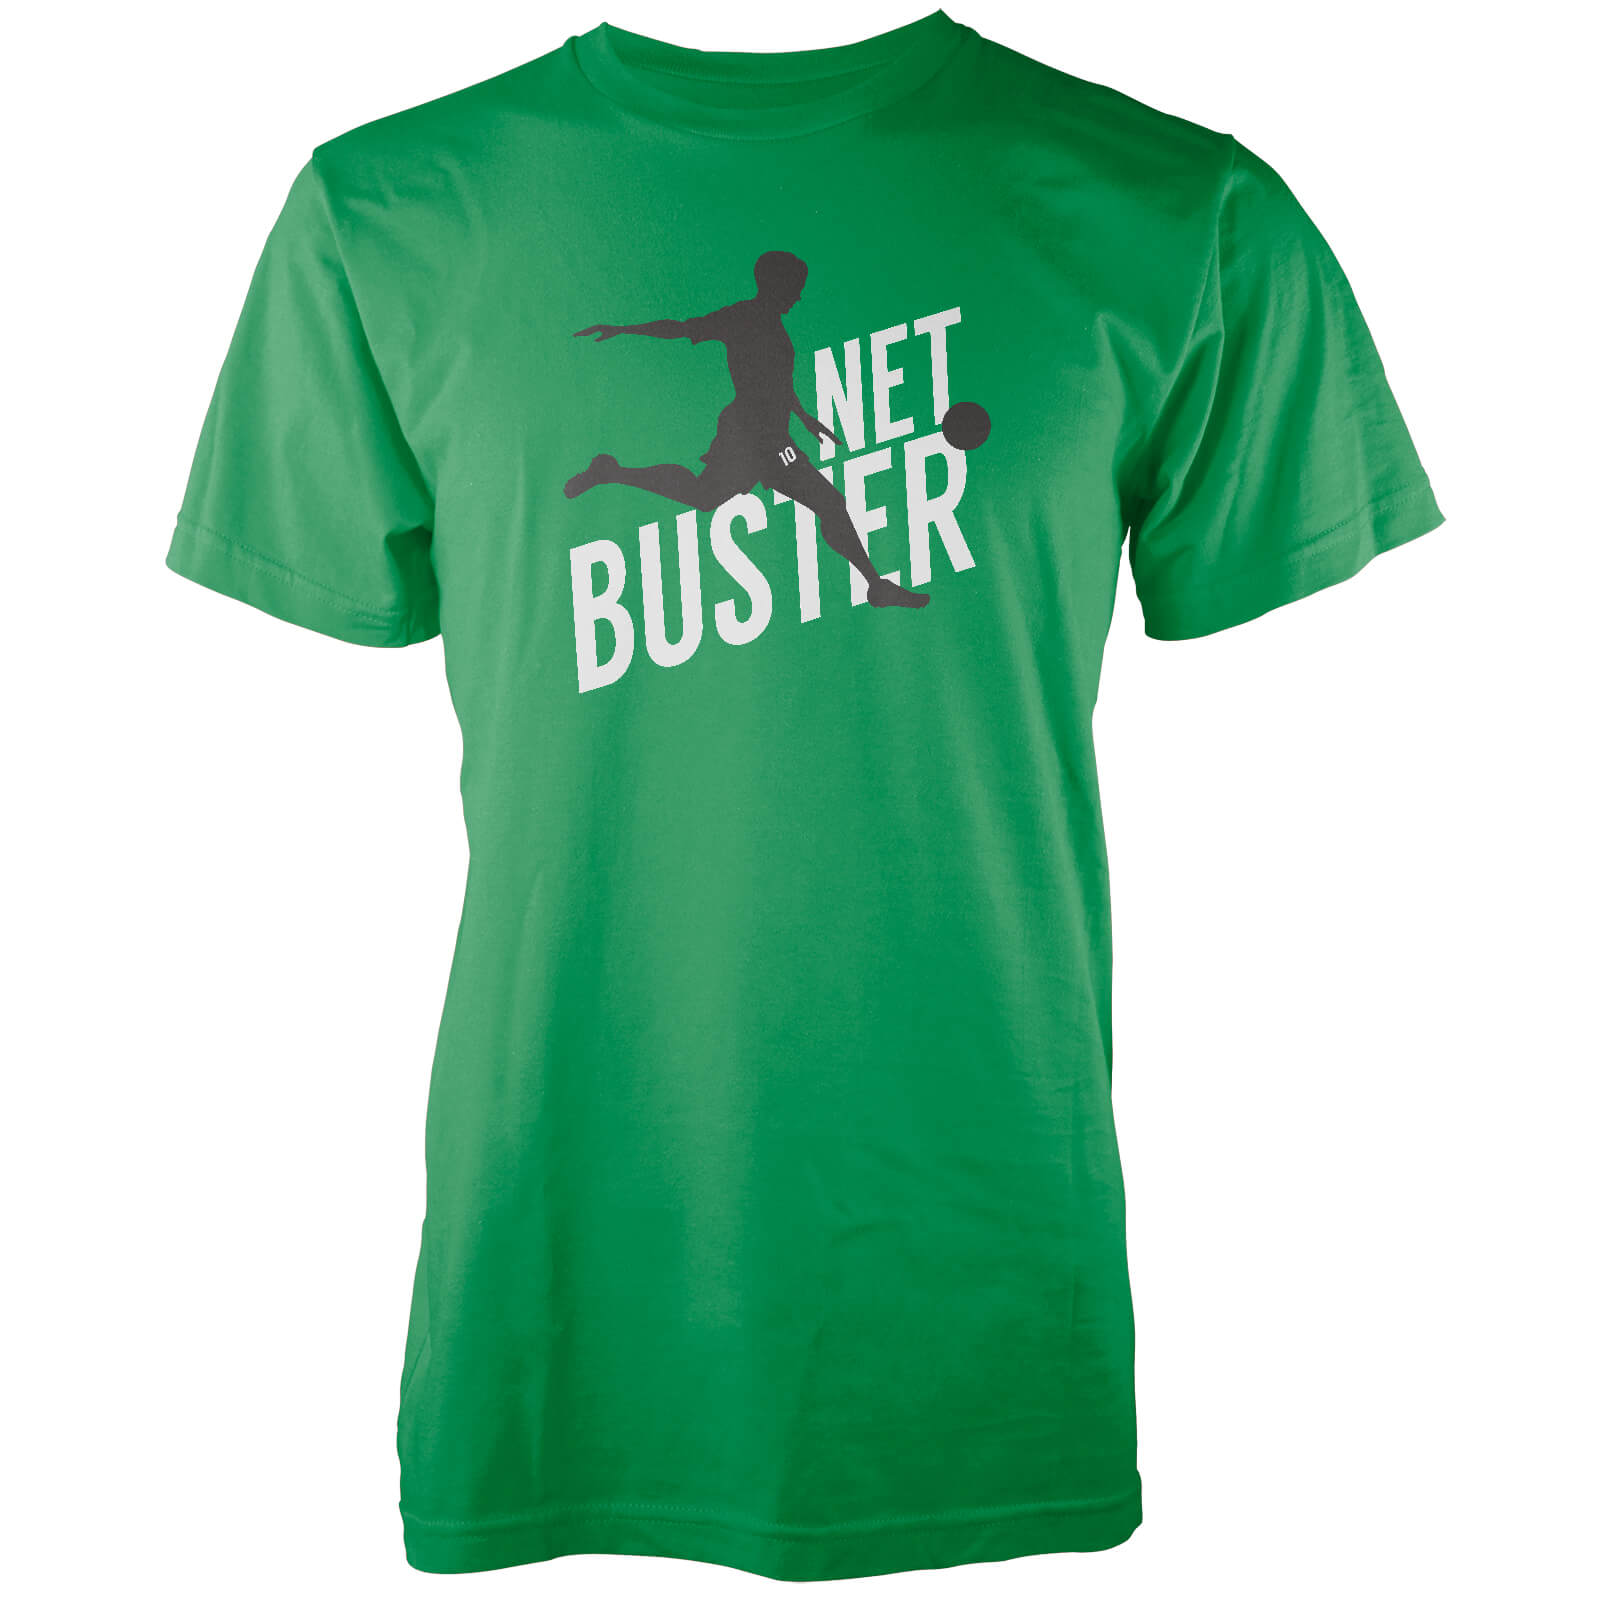 Net Buster Men's Green T-Shirt - S - Green